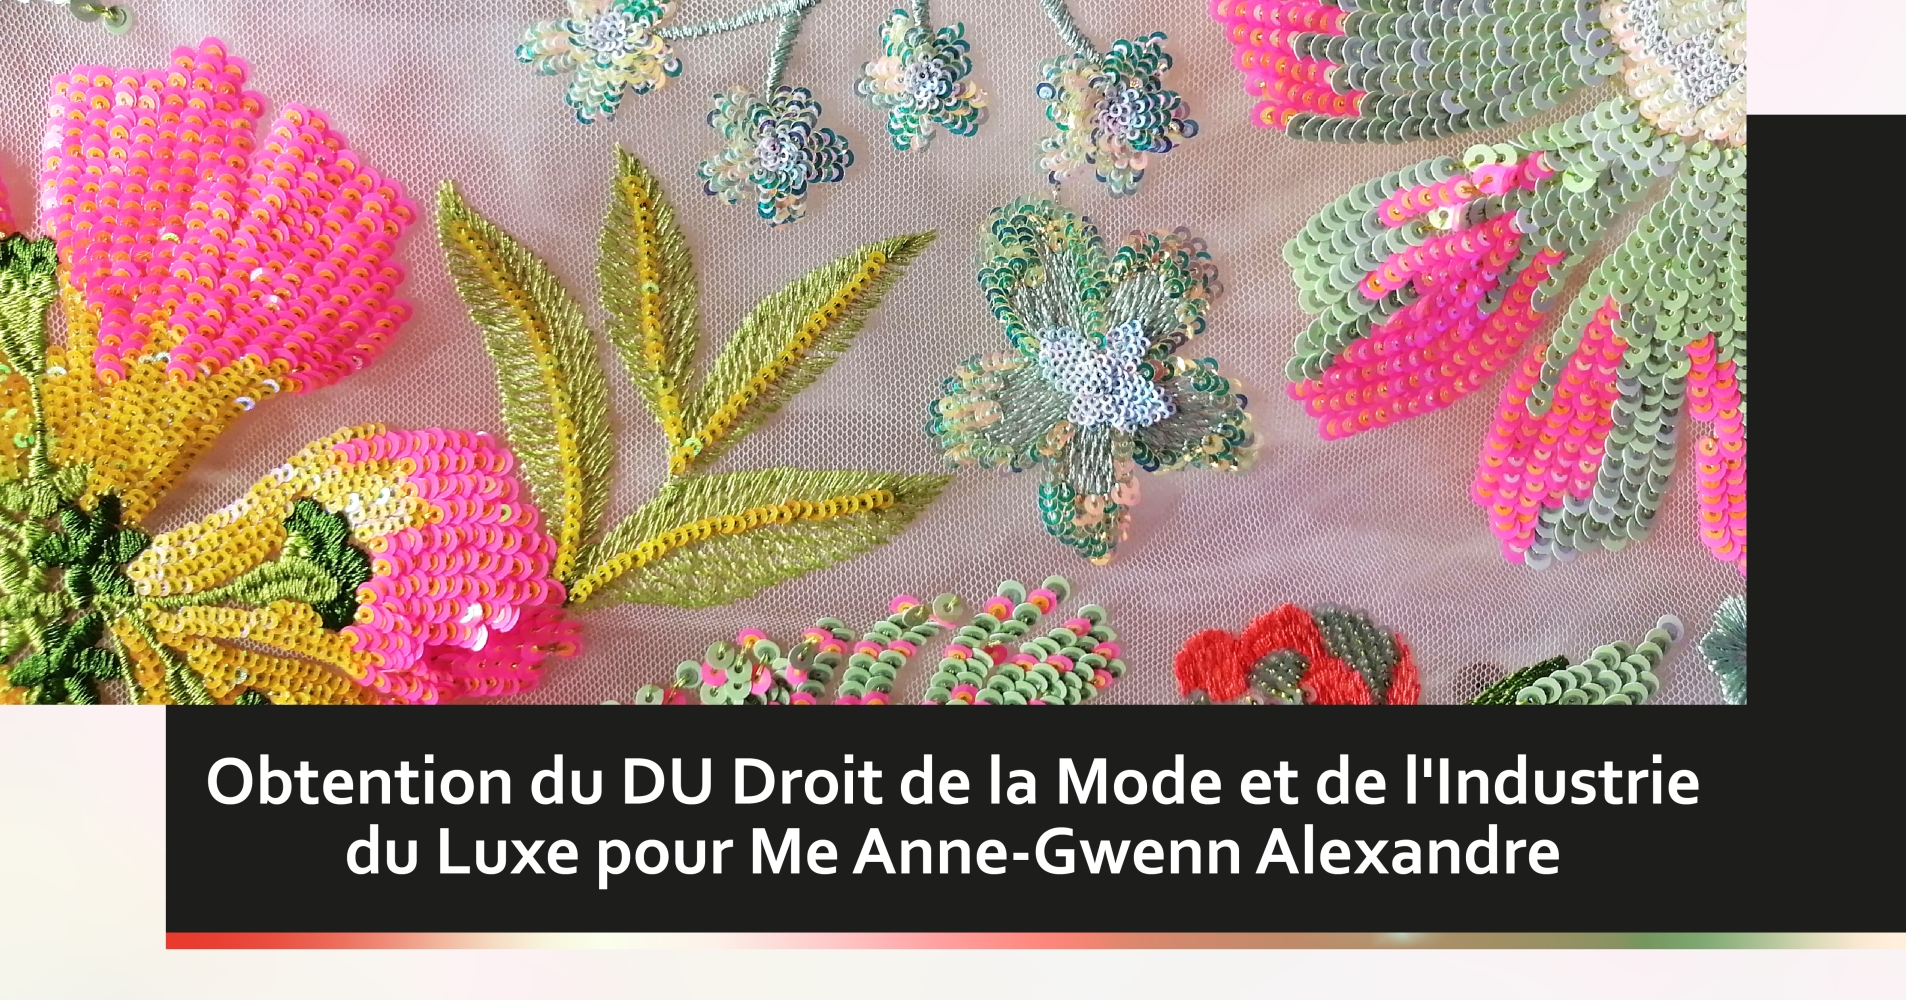 Obtention du DU Droit de la Mode et de l'Industrie du Luxe pour Me Anne-Gwenn Alexandre